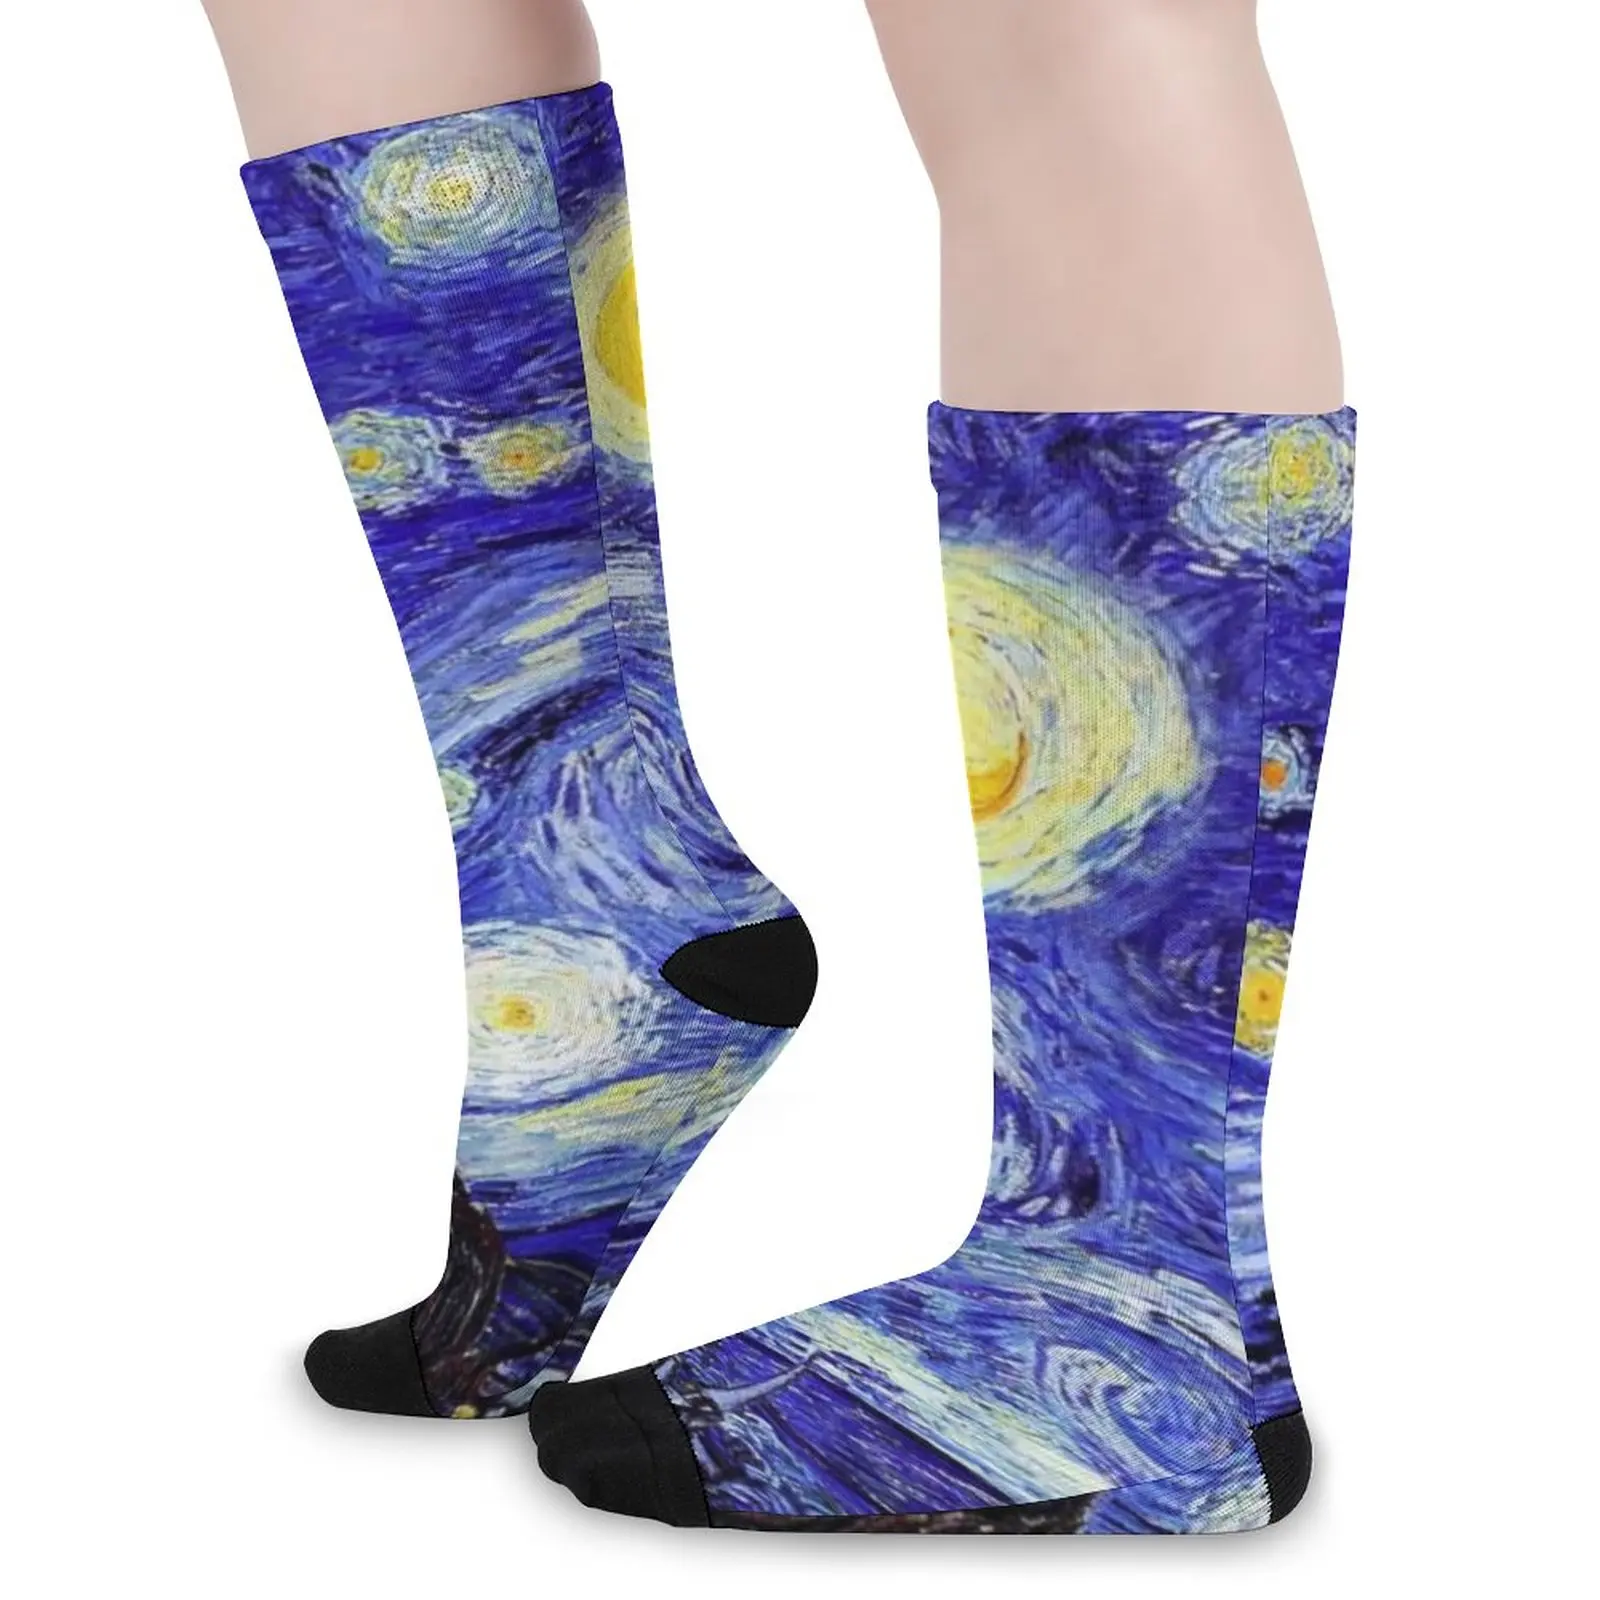 

Чулки с изображением гор Ван Гога, повседневные носки с мотивом звездной ночи, весенние нескользящие носки для девочек, мягкие спортивные носки для улицы